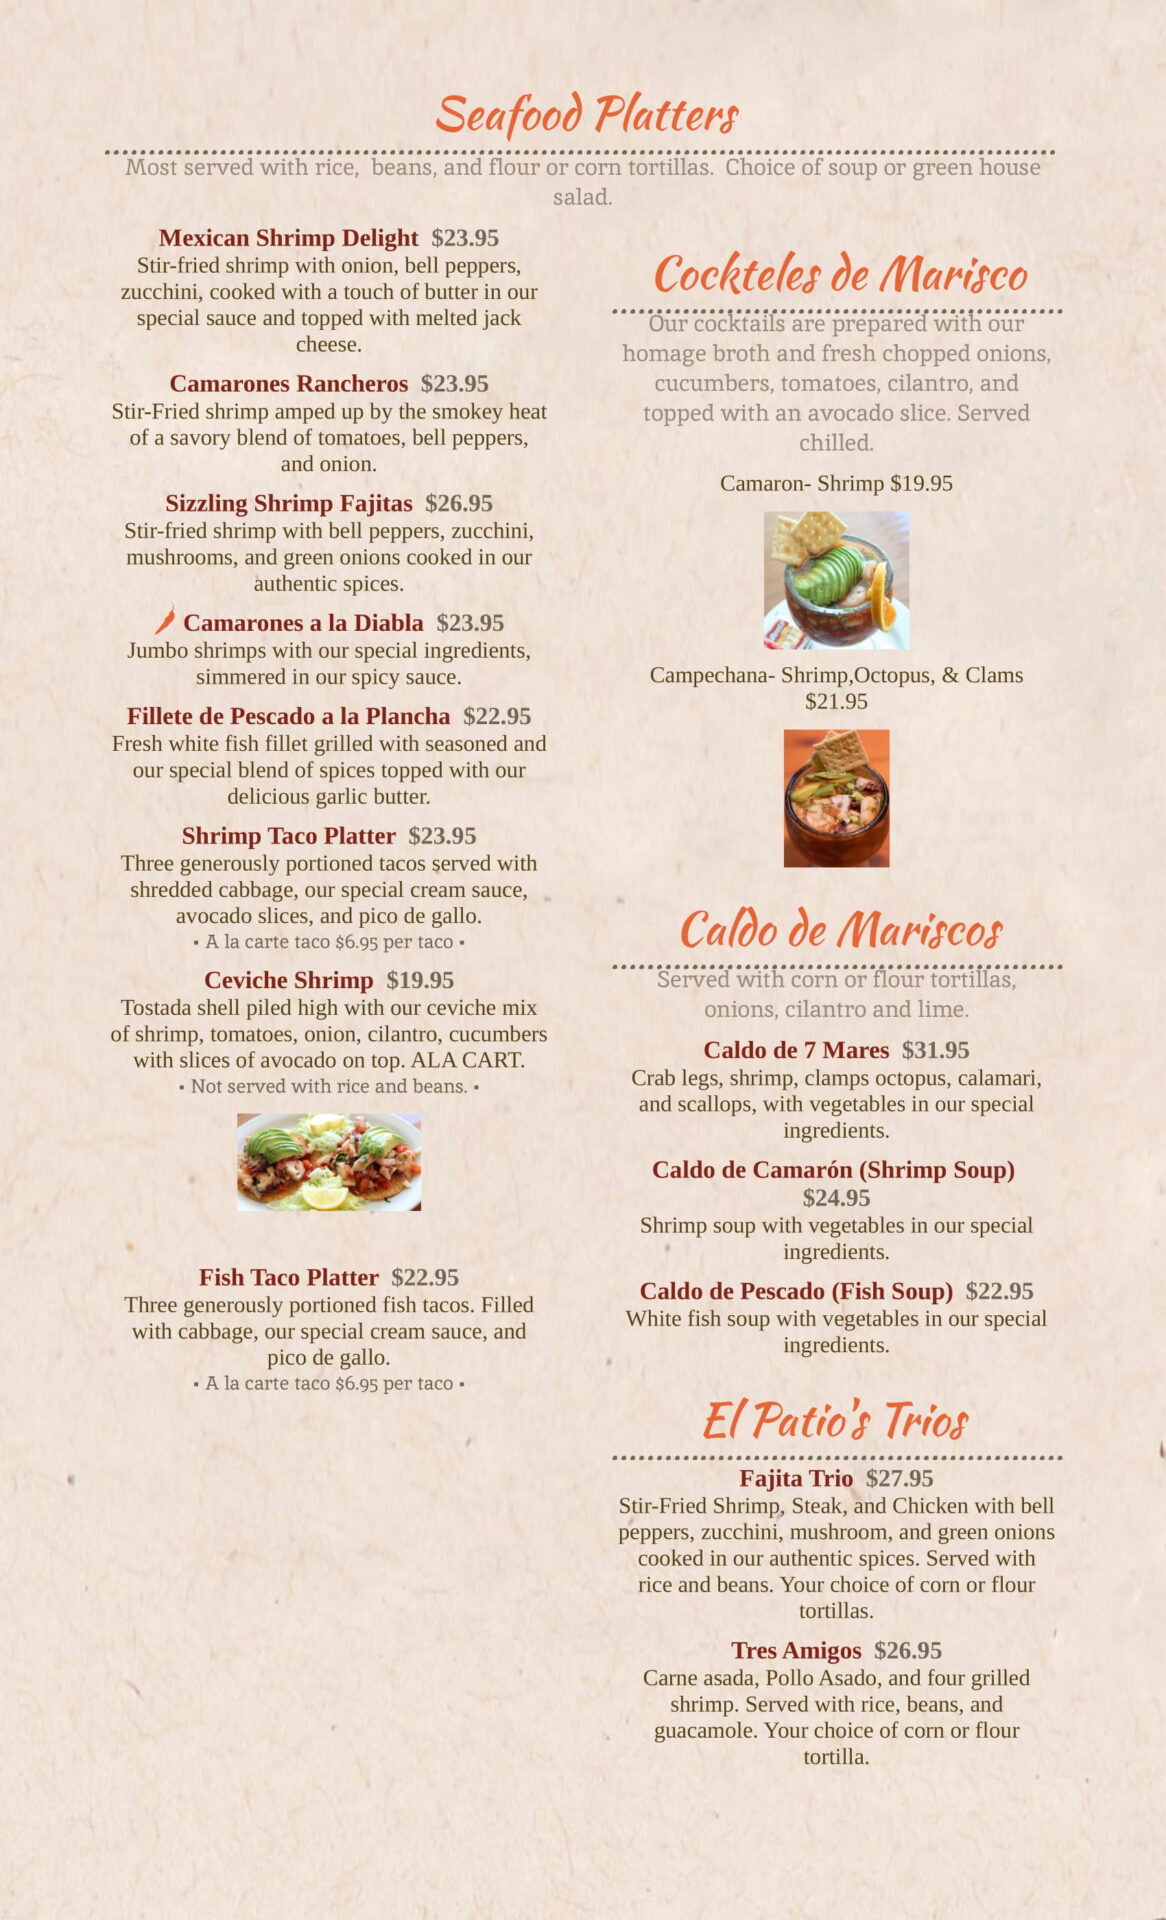 Seafood platters menu on display of the website